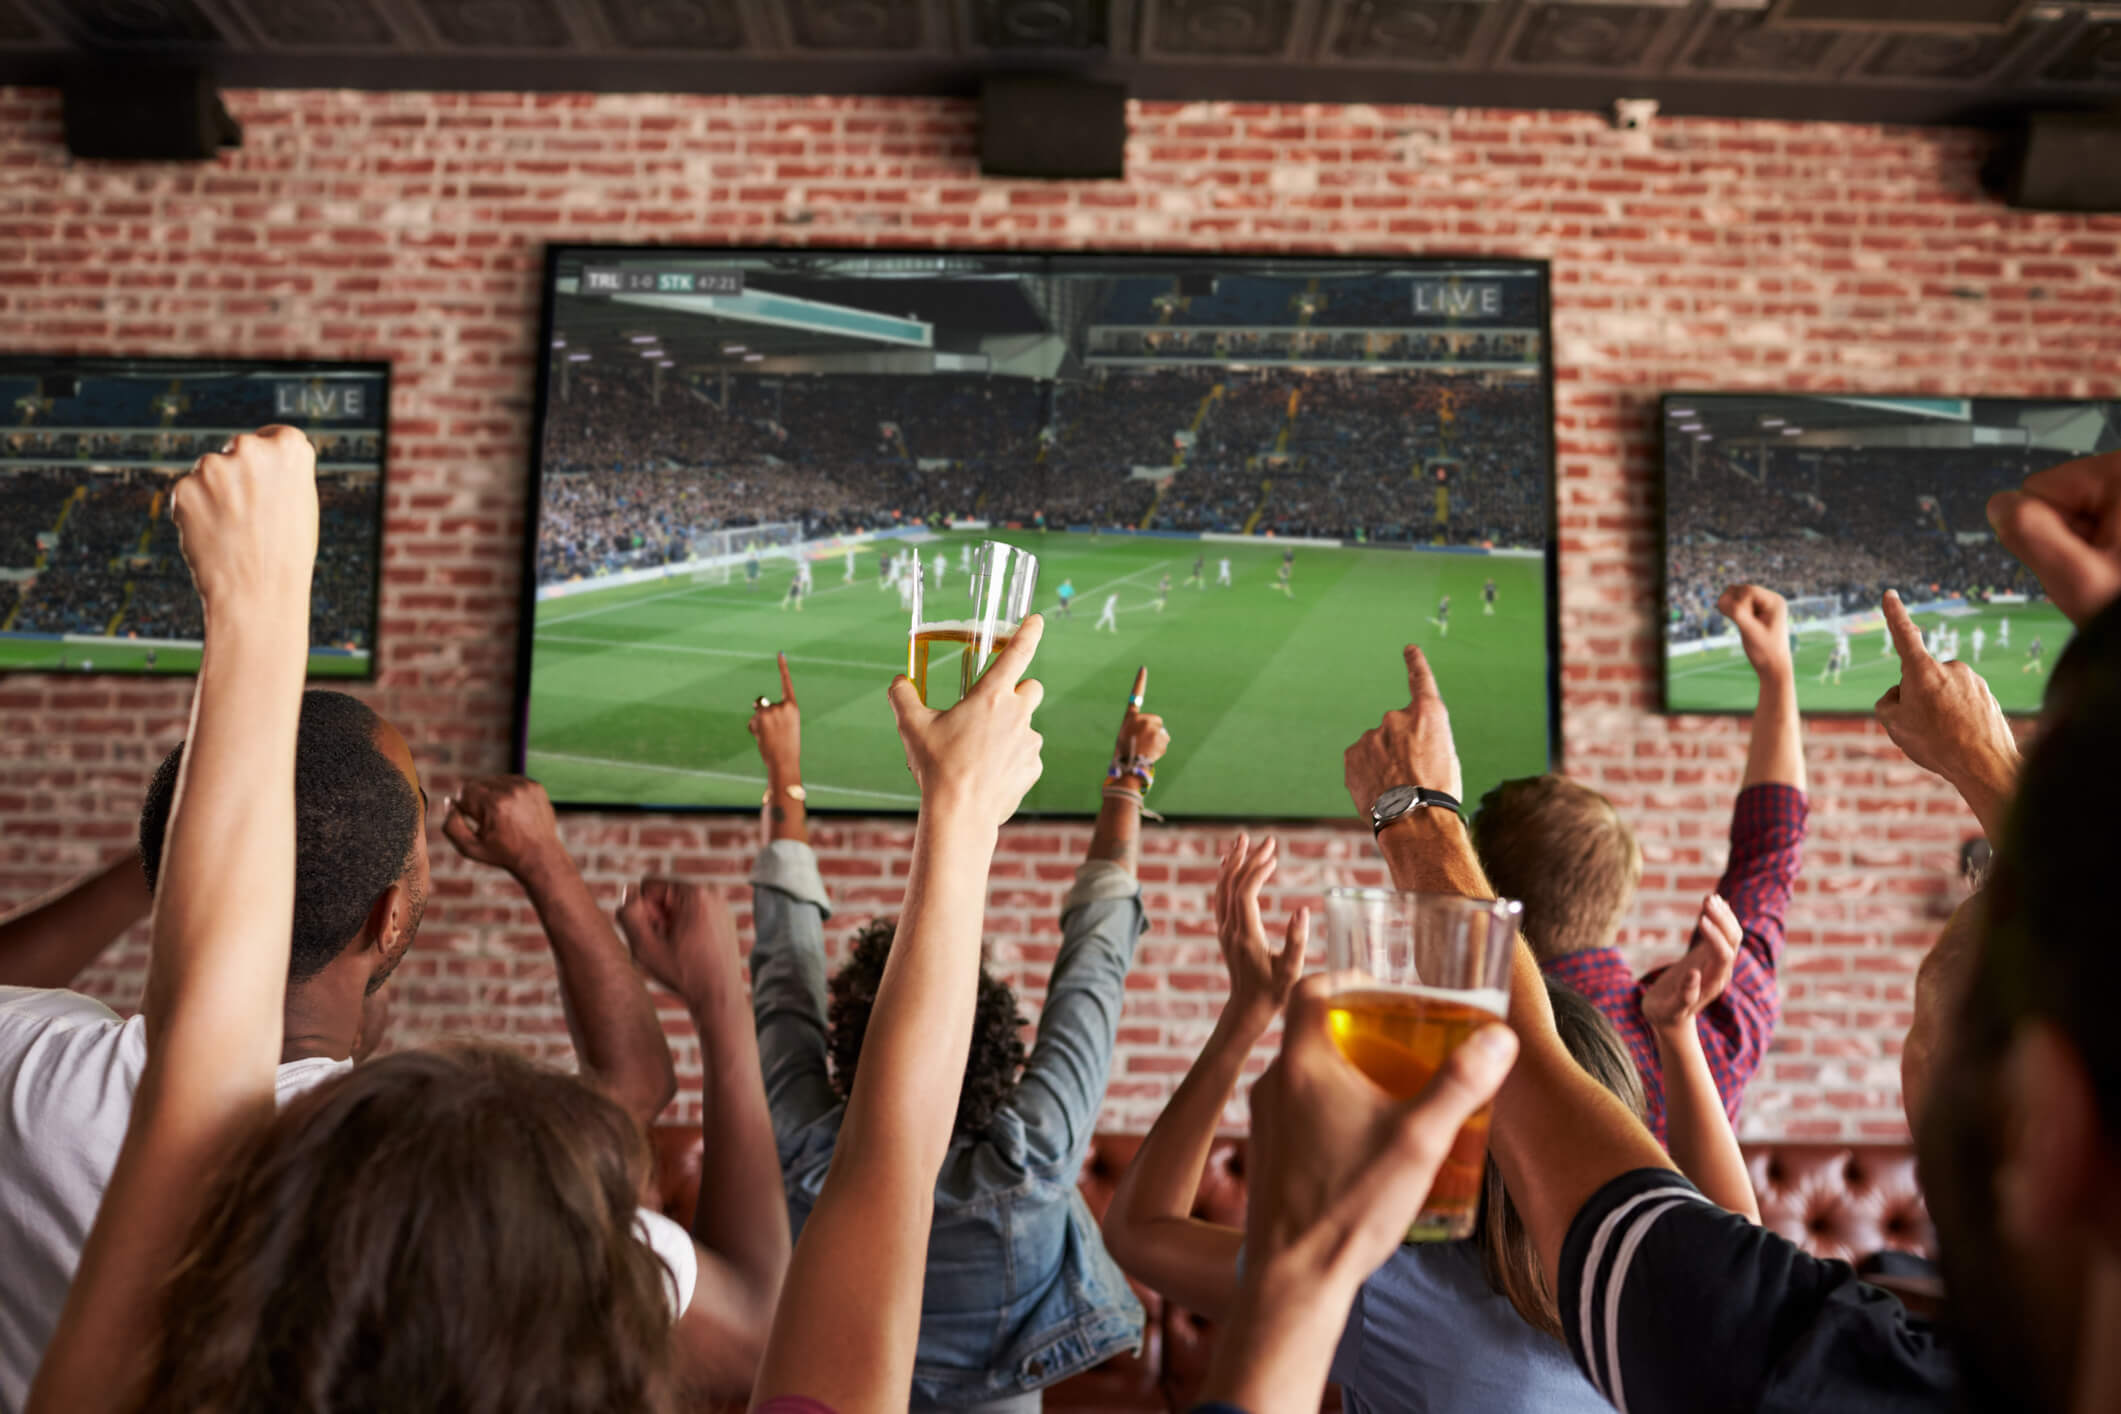 Pessoas assistindo jogos de esporte na Tv e conversando sobre mídia televisiva. Na imagem temos uma TV grande e uma parede 